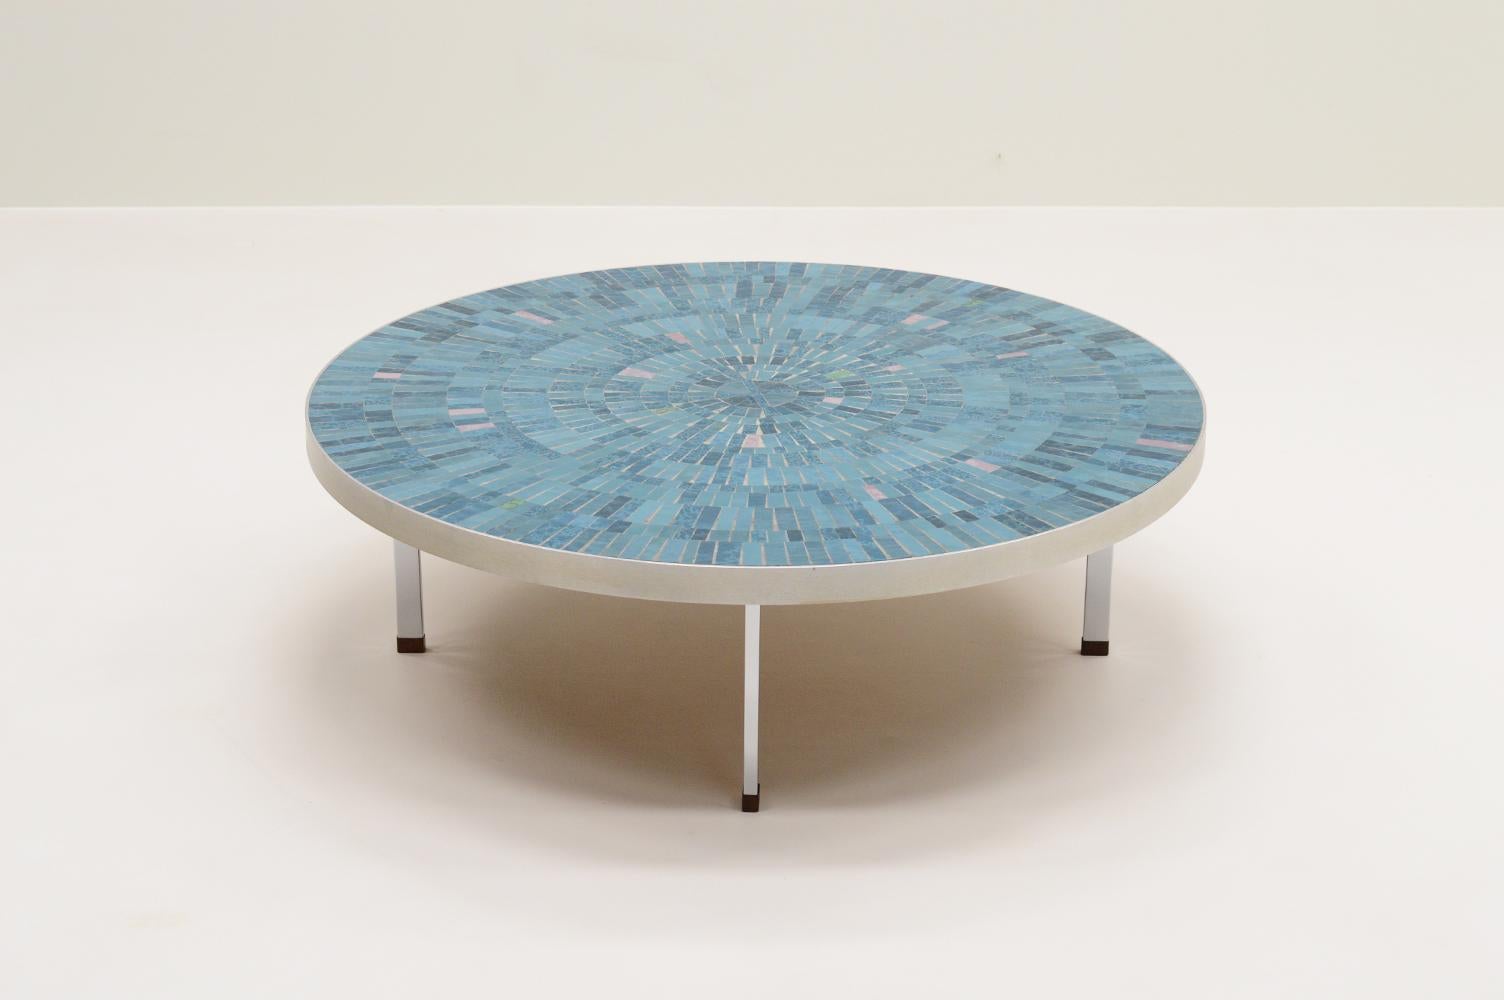 German Mosaic coffee table by Berthold Müller for Mosaikwerkstatt Berthold Müller 1960s